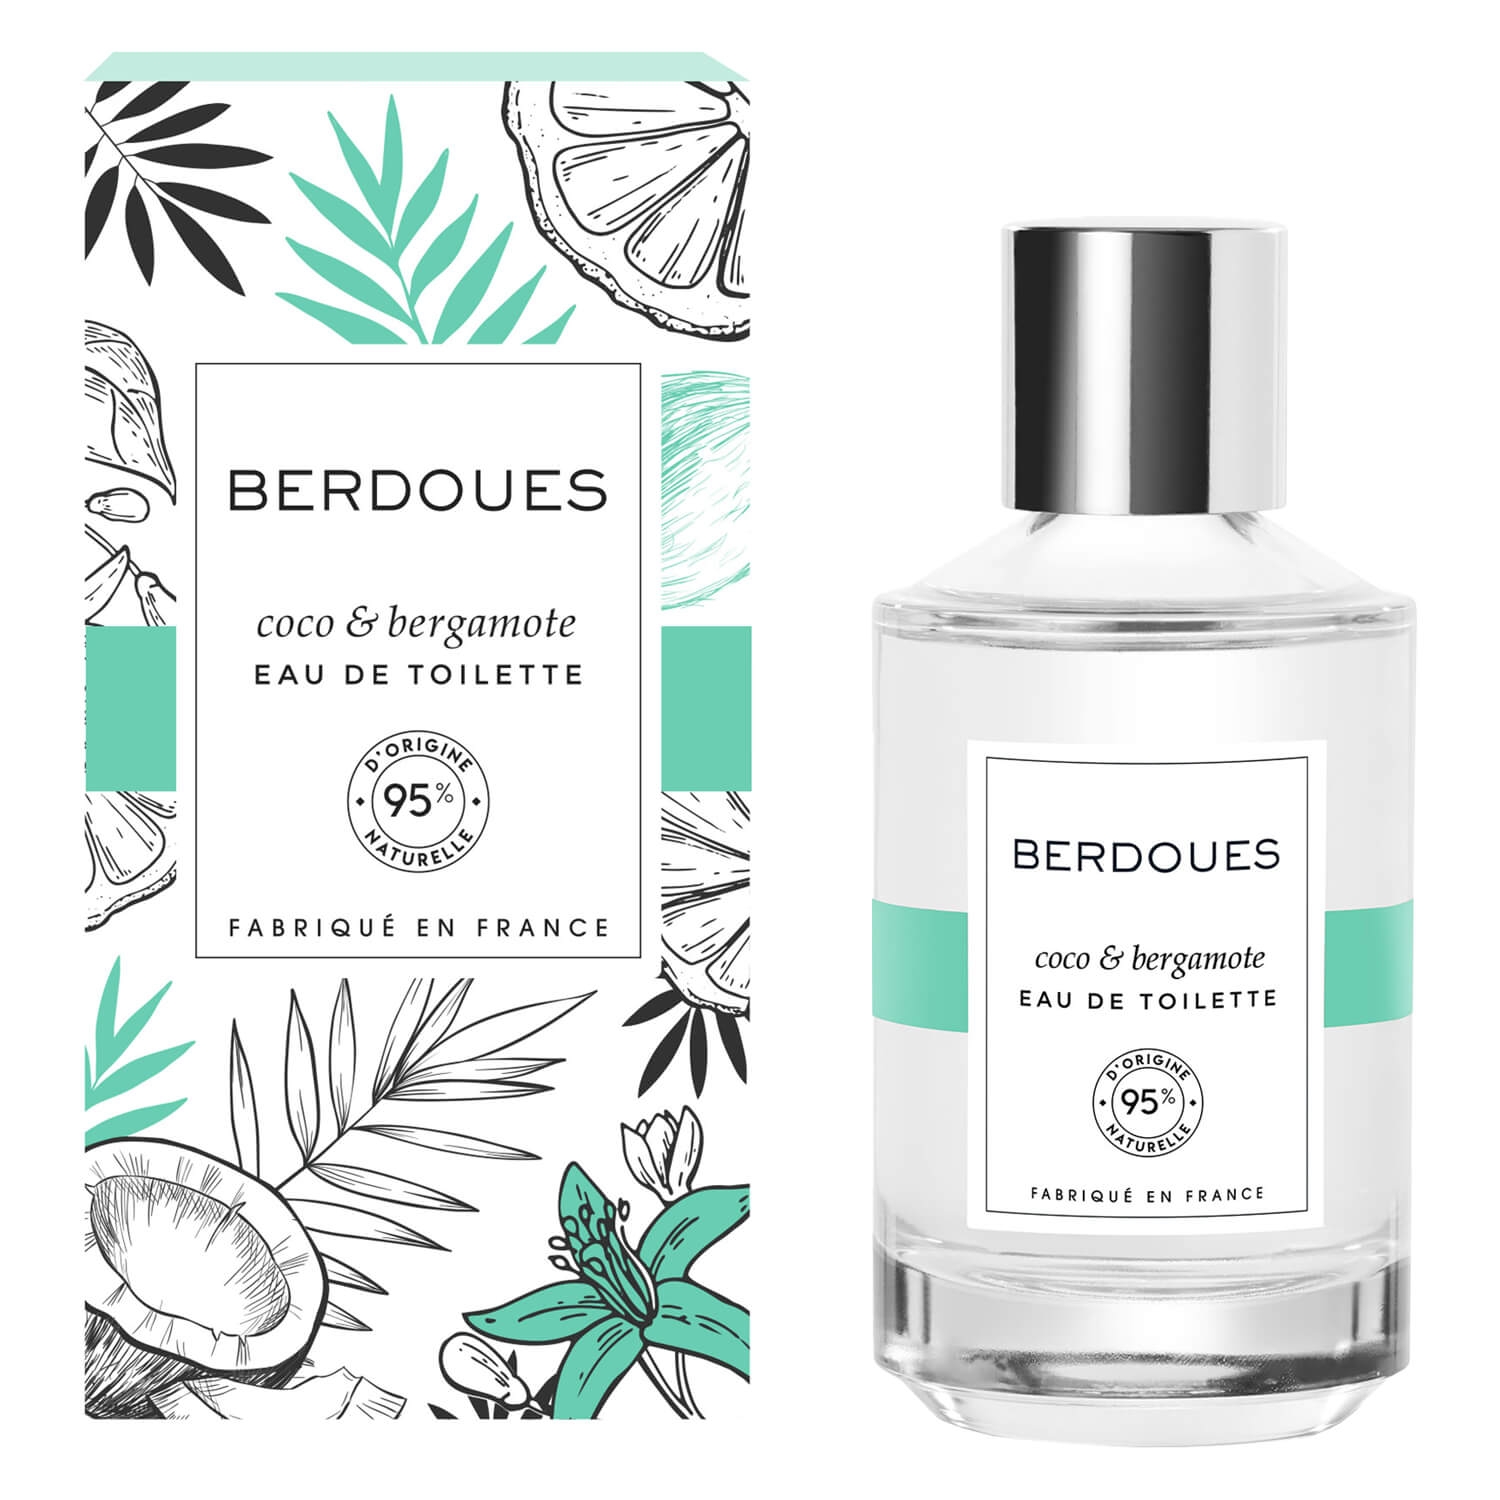 Produktbild von BERDOUES - Coco & Bergamote Eau de Toilette